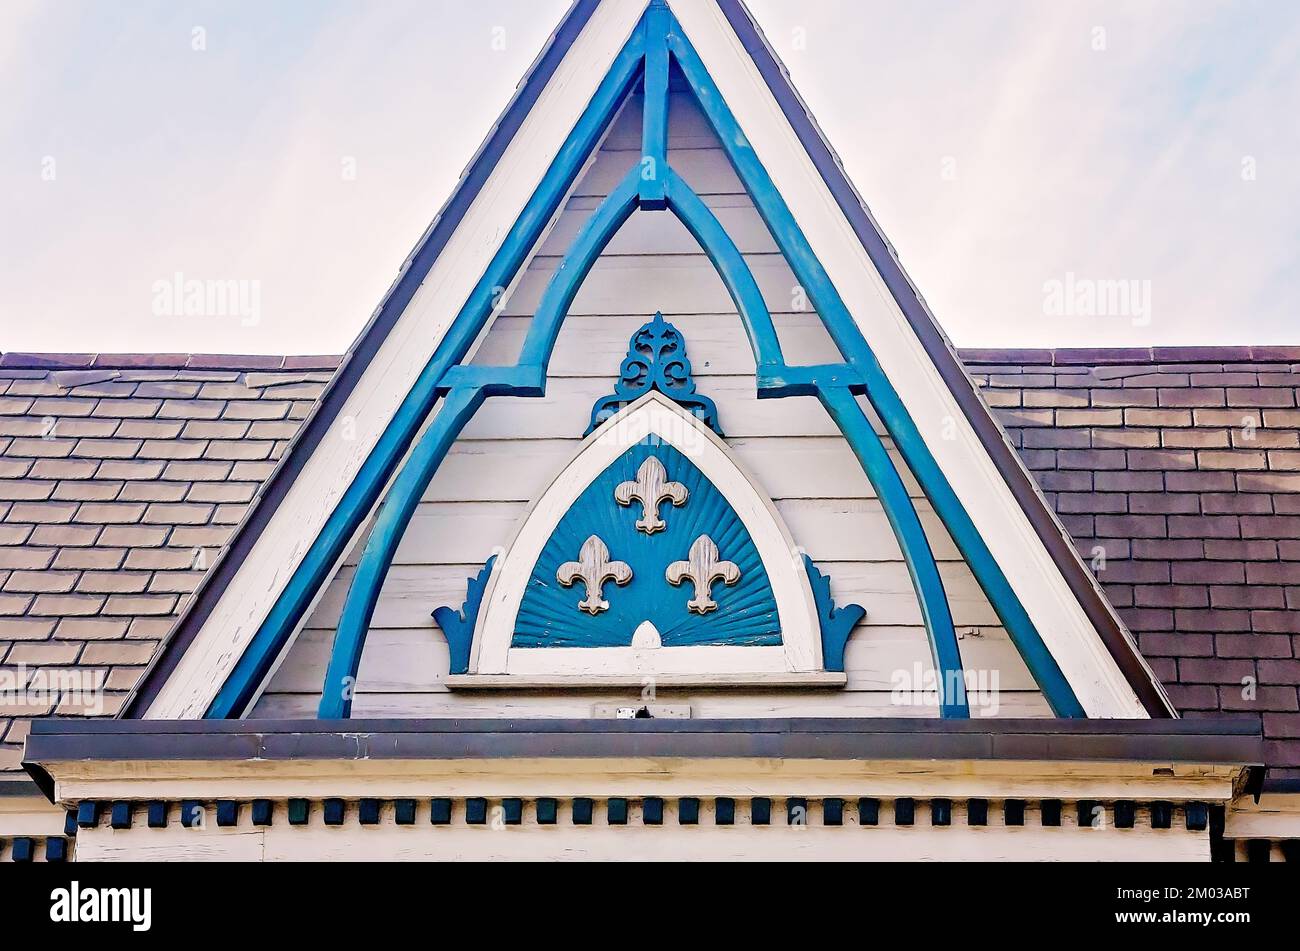 Fleurs-de-lis, ainsi que d'autres détails architecturaux, décorent le toit d'une maison du quartier français, le 11 novembre 2015, à la Nouvelle-Orléans, Louisiane. Banque D'Images